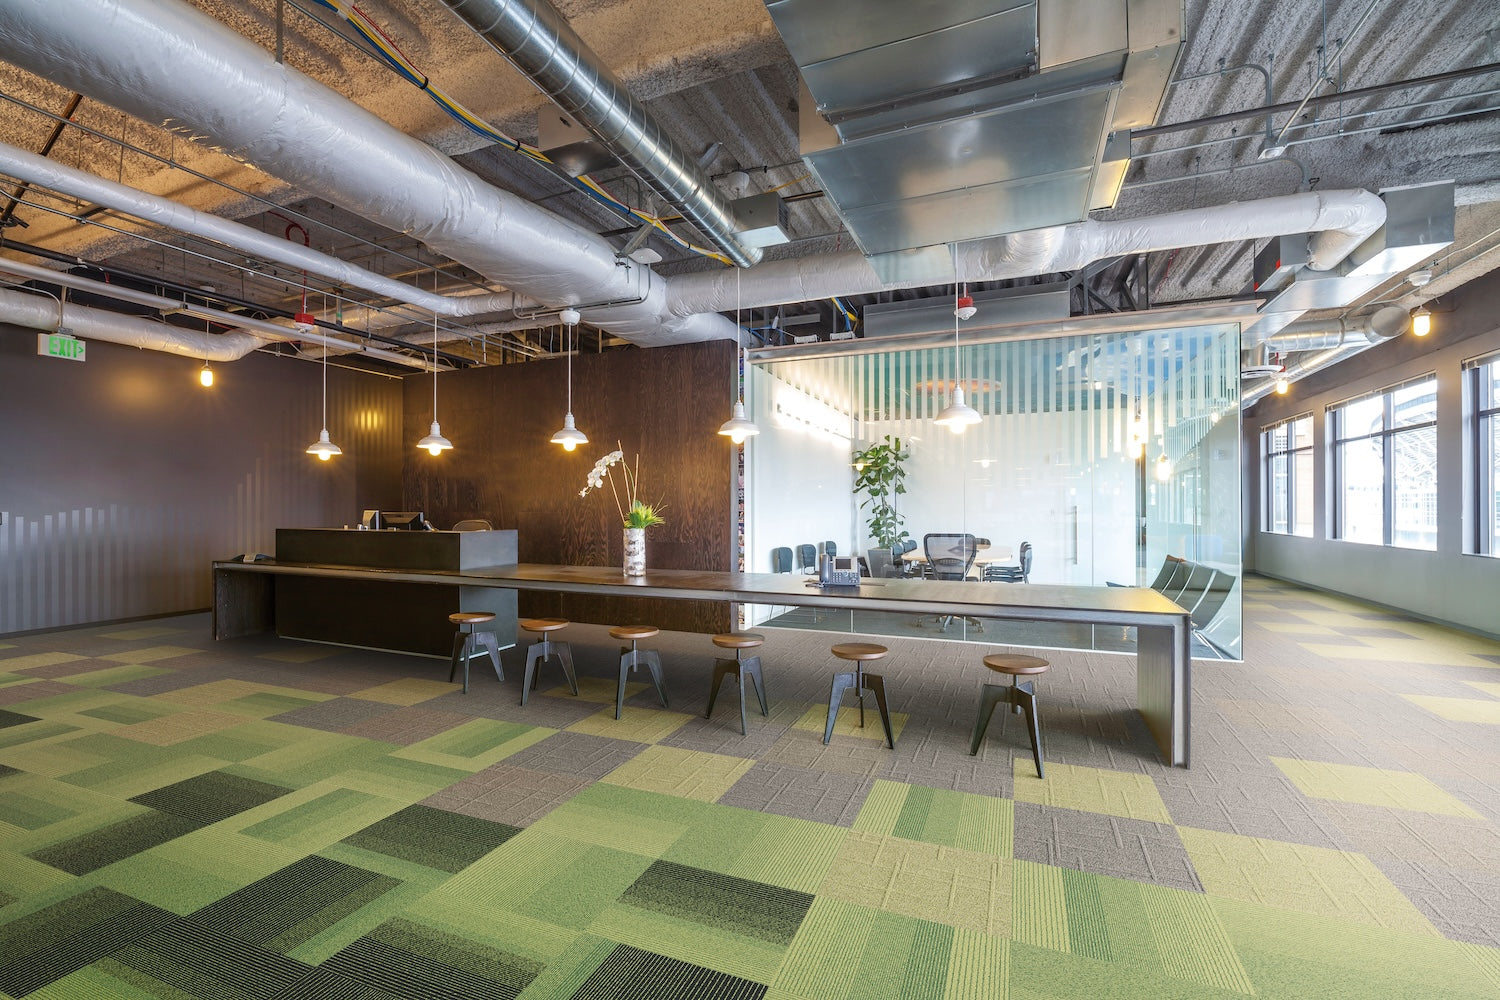 オフィス向けカーペット・業務用床材の種類と選び方。おすすめ商品もご紹介